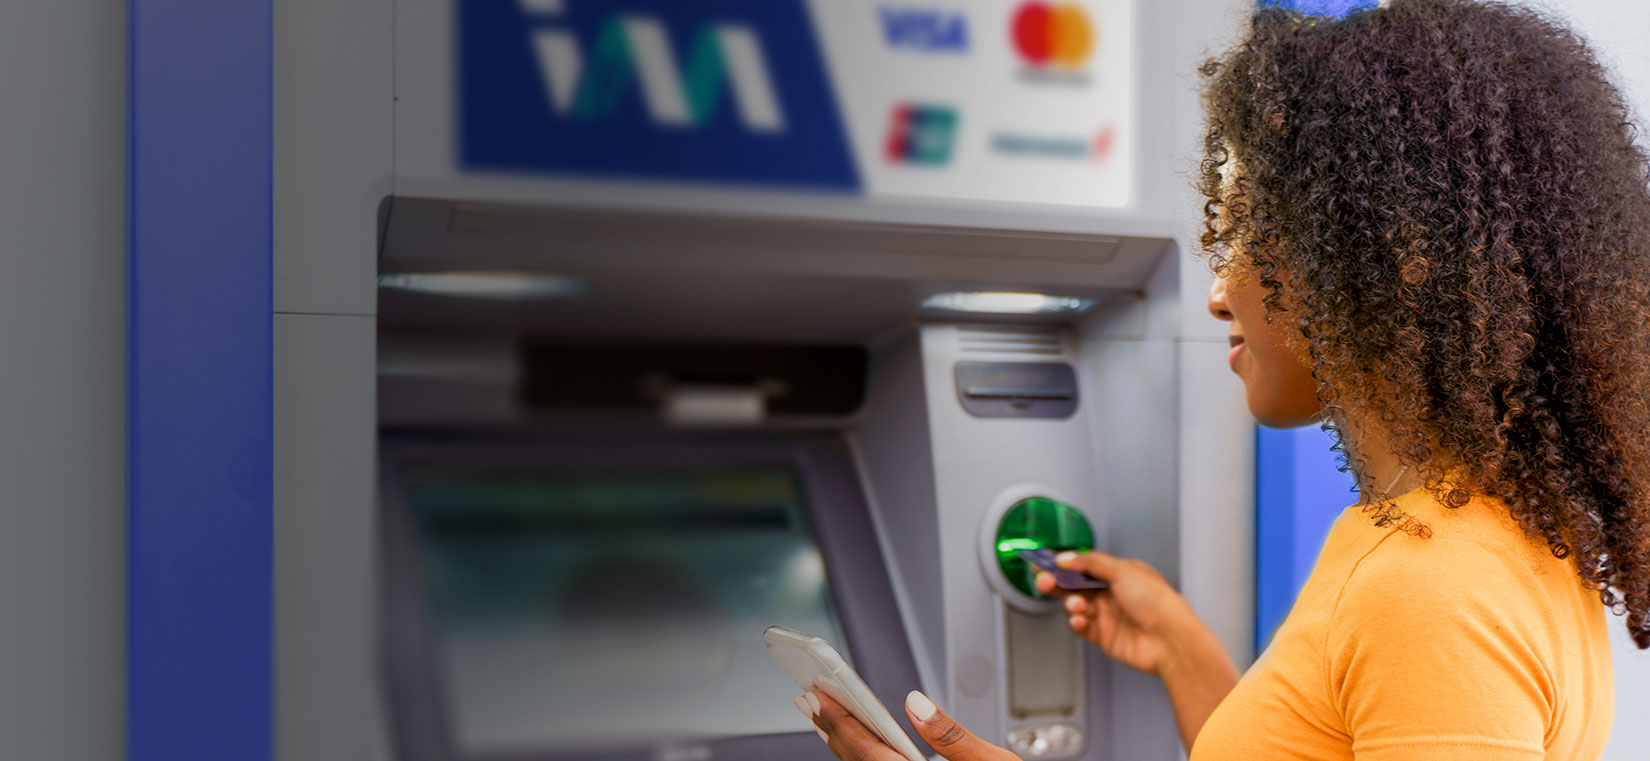 I&M Bank Uganda - ATM Locator